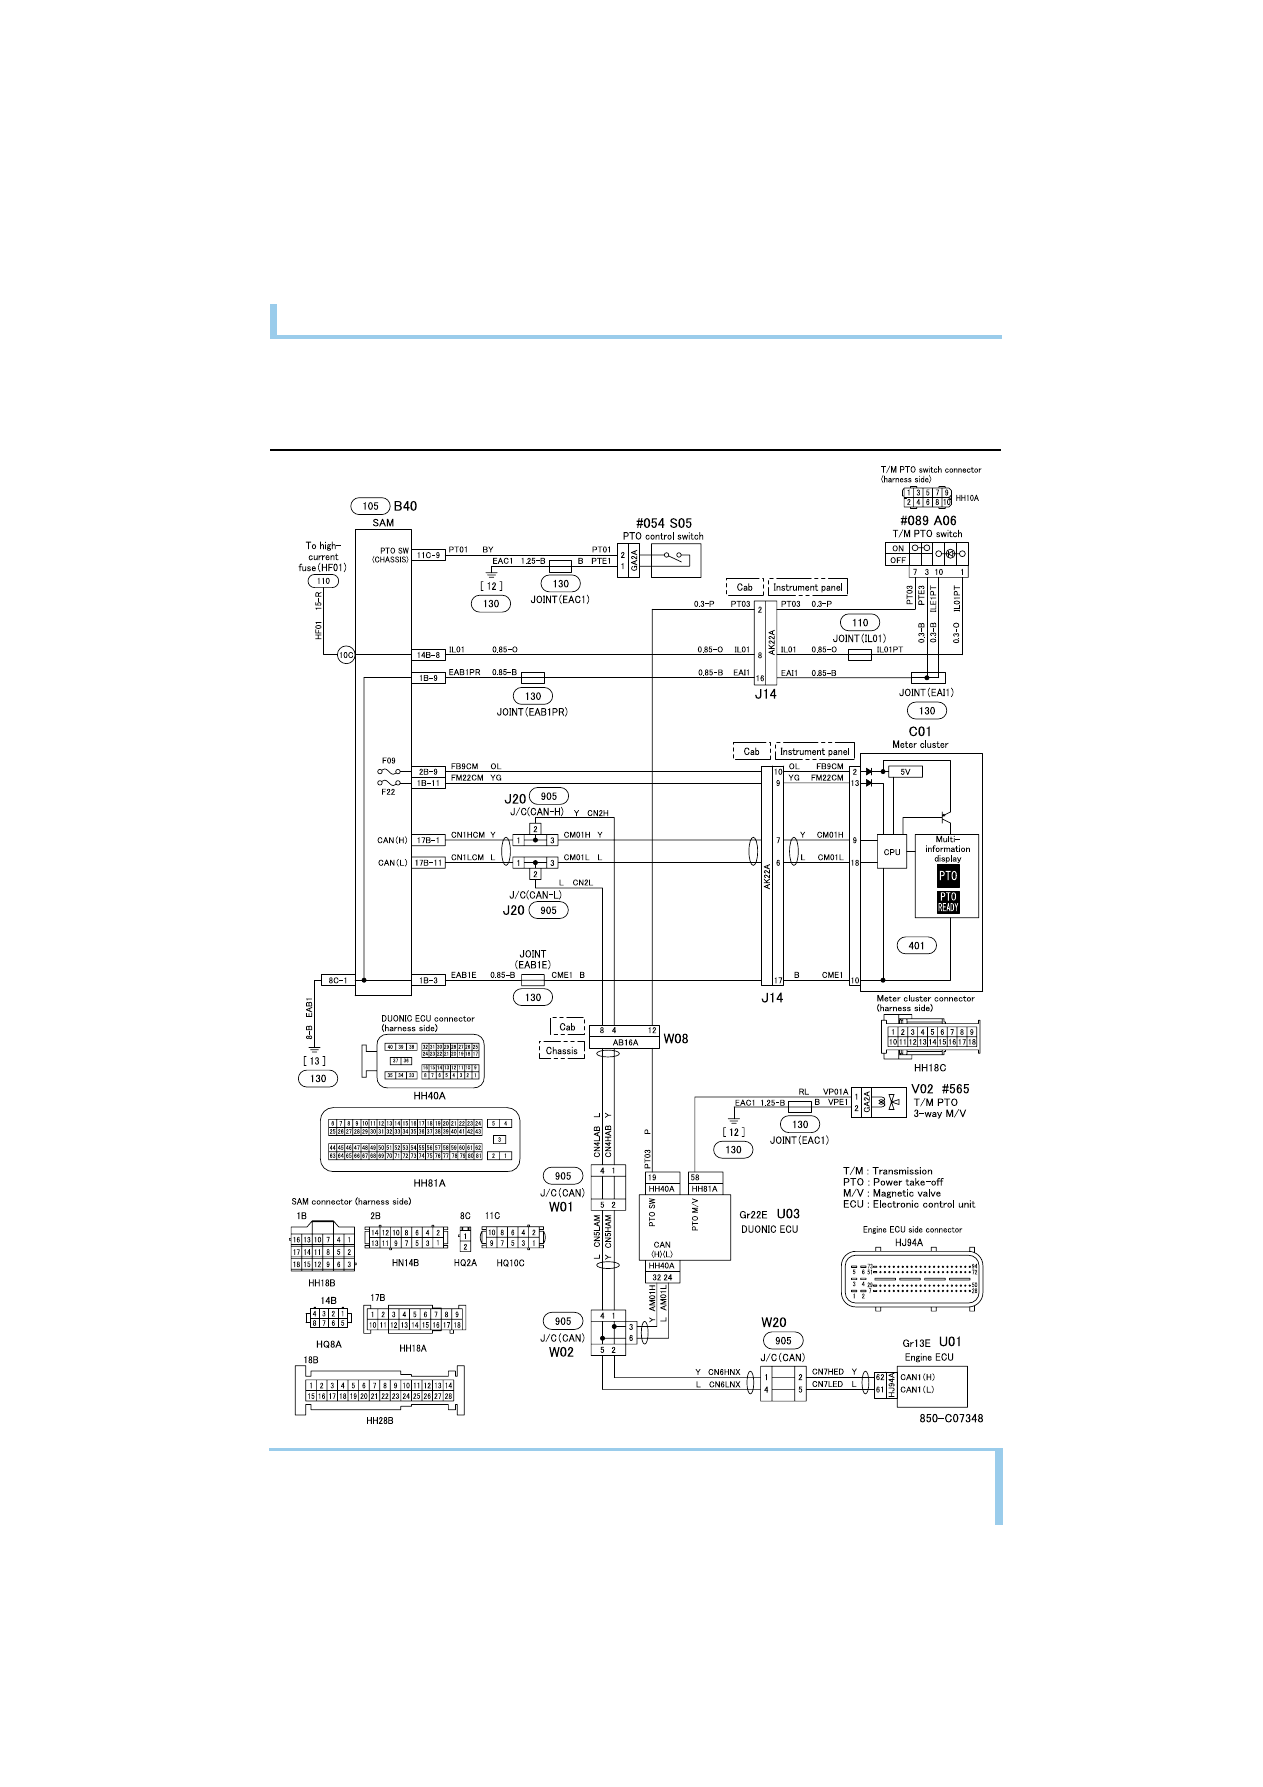 Mitsubishi Fuso Wiring Diagram - Wiring Diagram